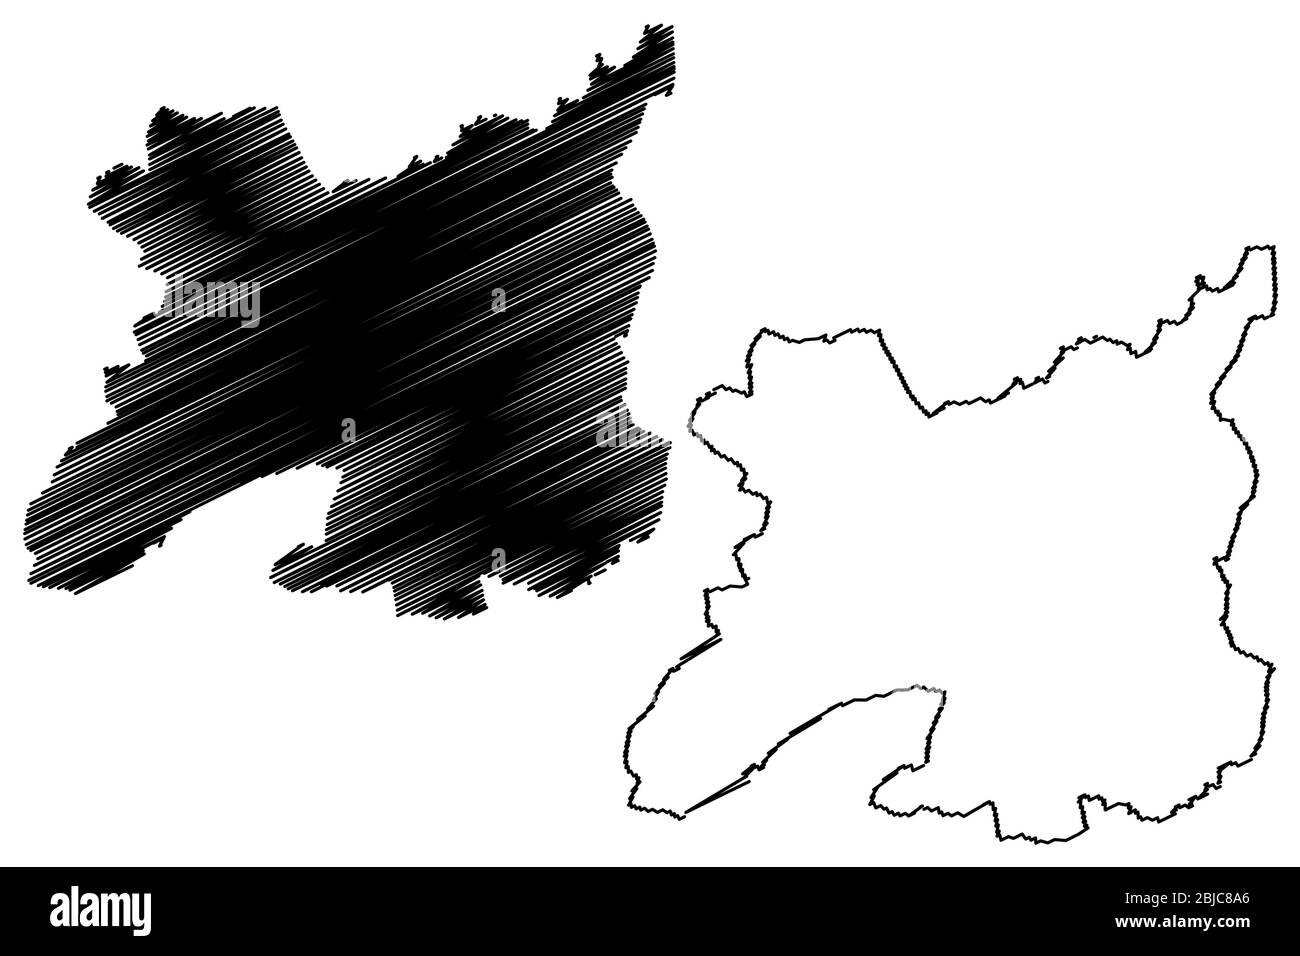 Rennes City (République française, France) illustration vectorielle de carte, esquisse de griffonnage carte de la ville de Rennes Illustration de Vecteur